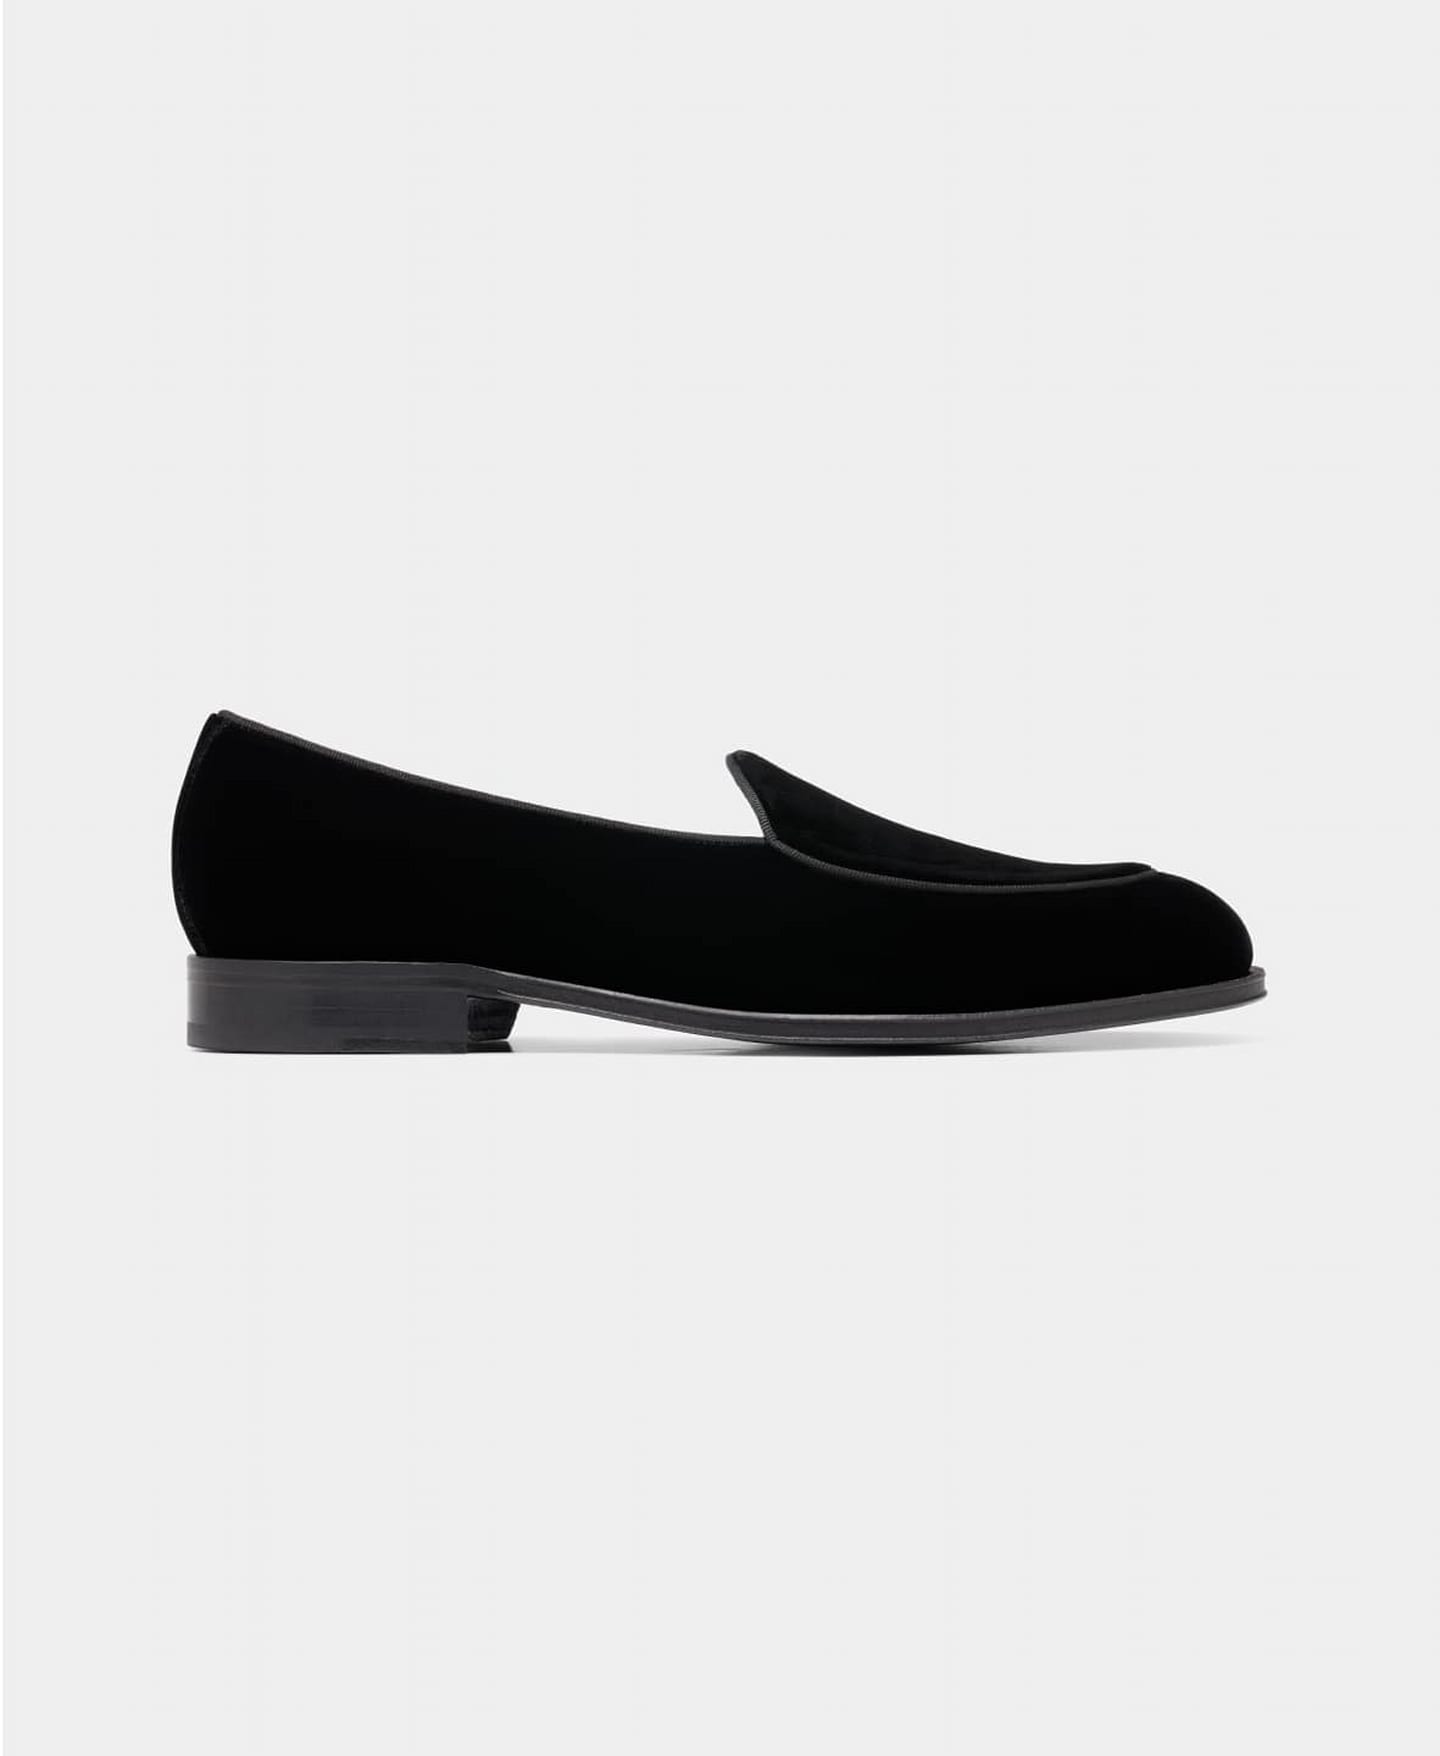 Black velvet tuxedo slippers.